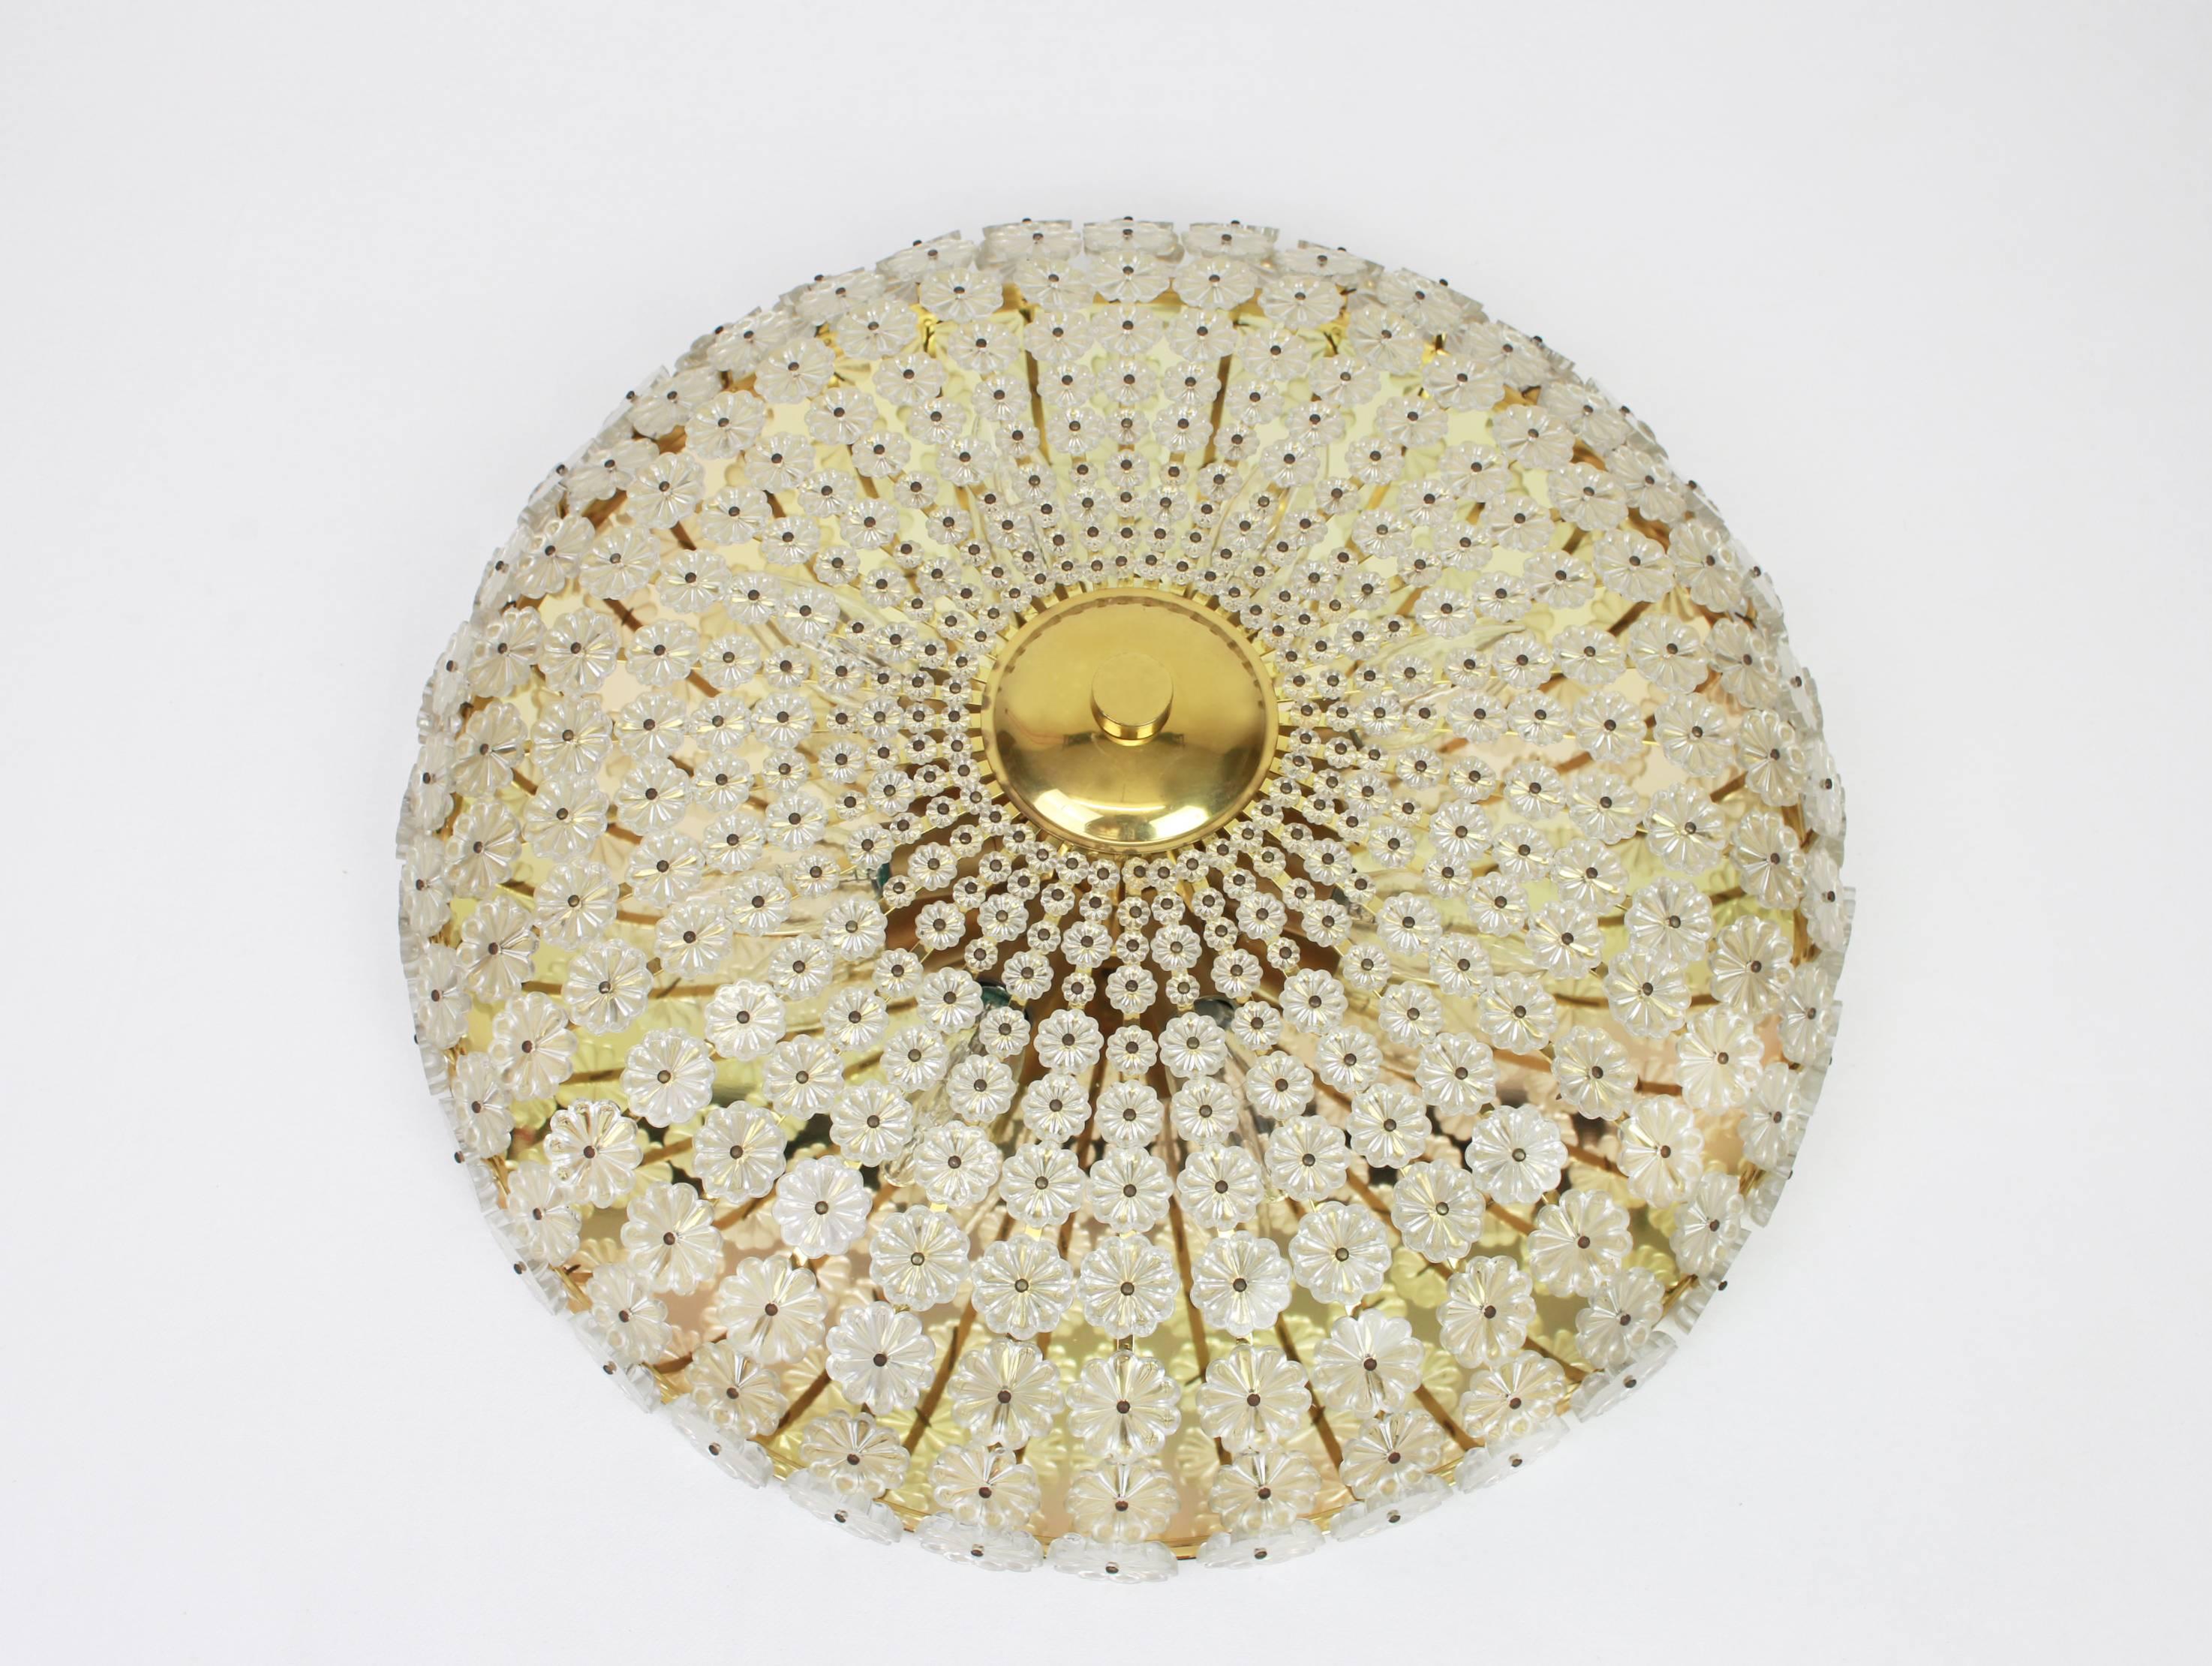 Grand encastré en forme de fleur conçu par Emil Stejnar en Autriche, dans les années 1960.
Il se compose d'un cadre en laiton entouré de centaines de verres en cristal créant une forme de fleur spectaculaire.

De haute qualité et en très bon état.